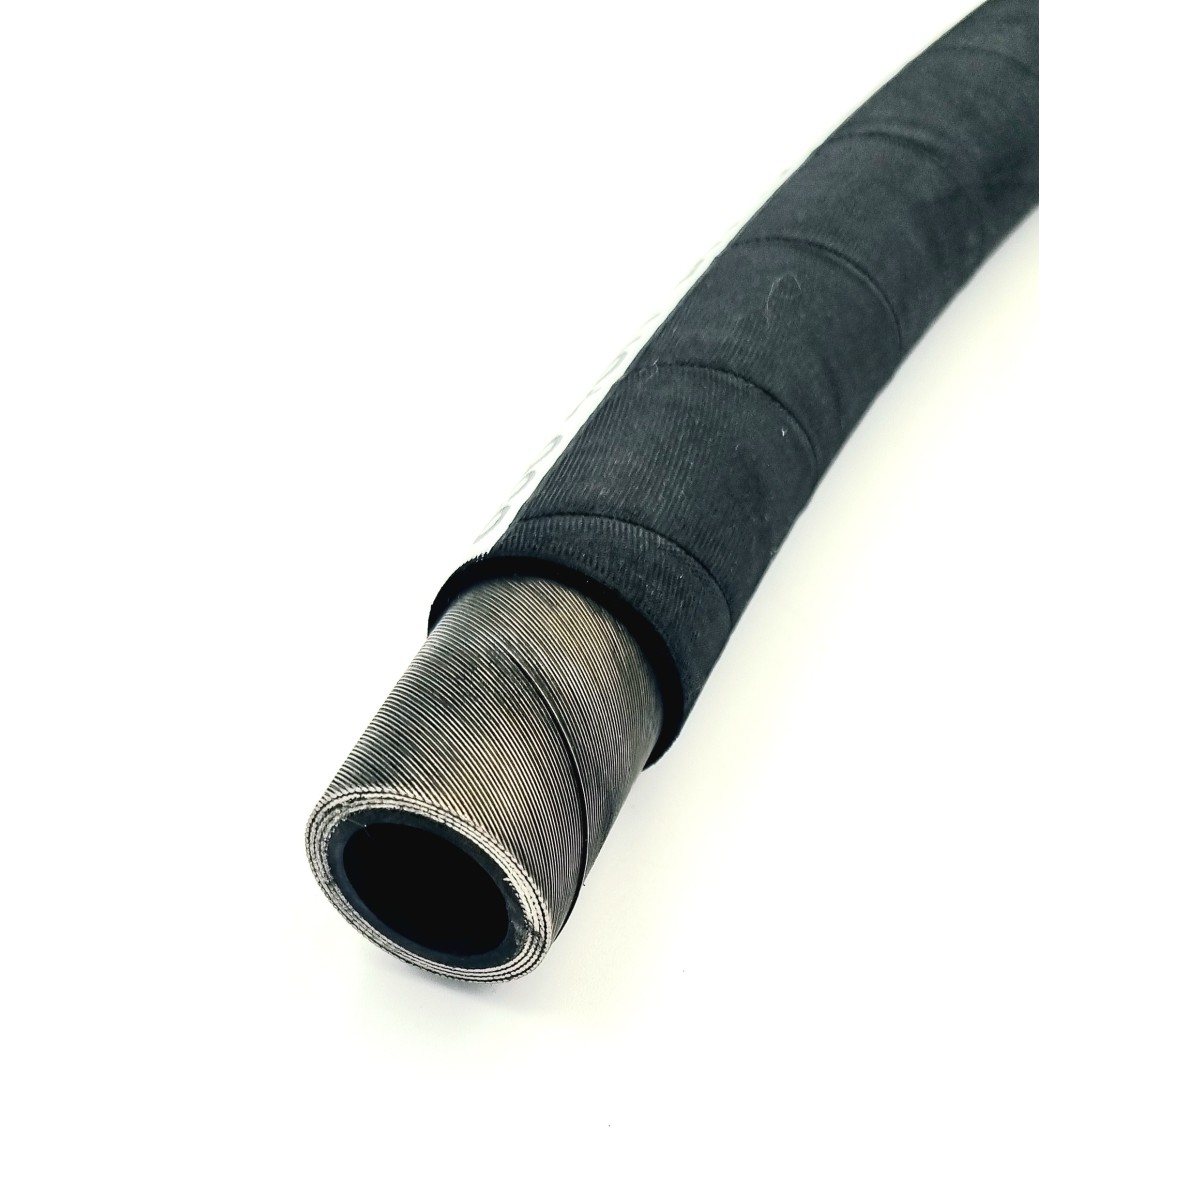 Tube acier diamètre 25mm - Intérieur 19mm - Norme DIN S